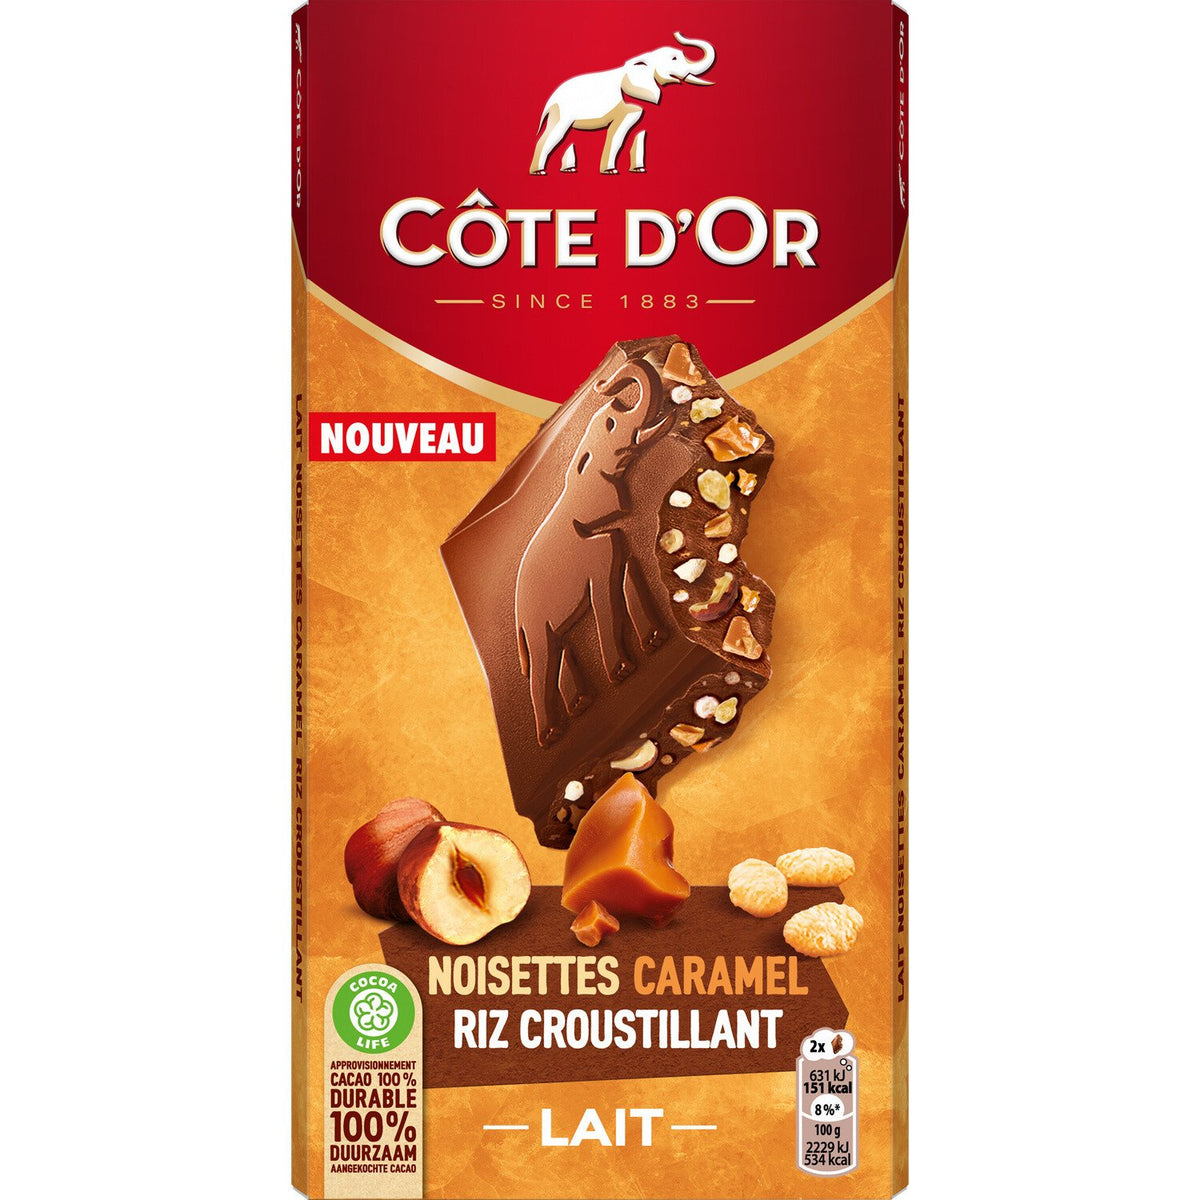 COTE D'OR Tablette de chocolat au lait noisettes caramel et riz croustillant 170g -B43